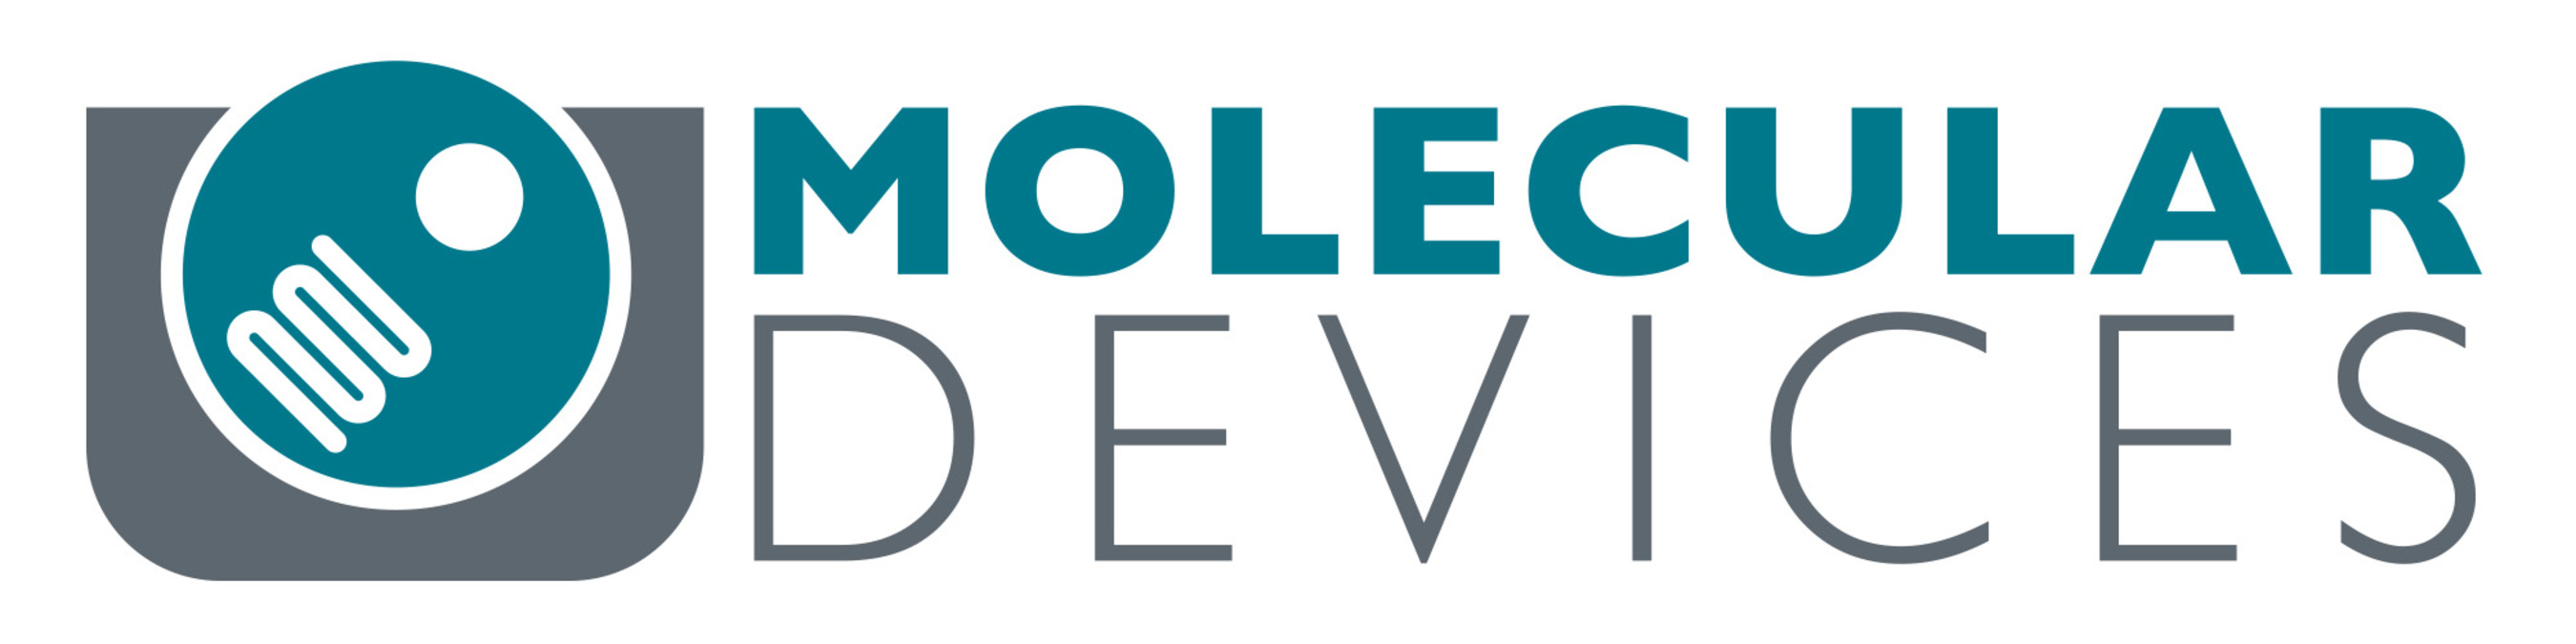 Molecular Devices, Inc. logo.